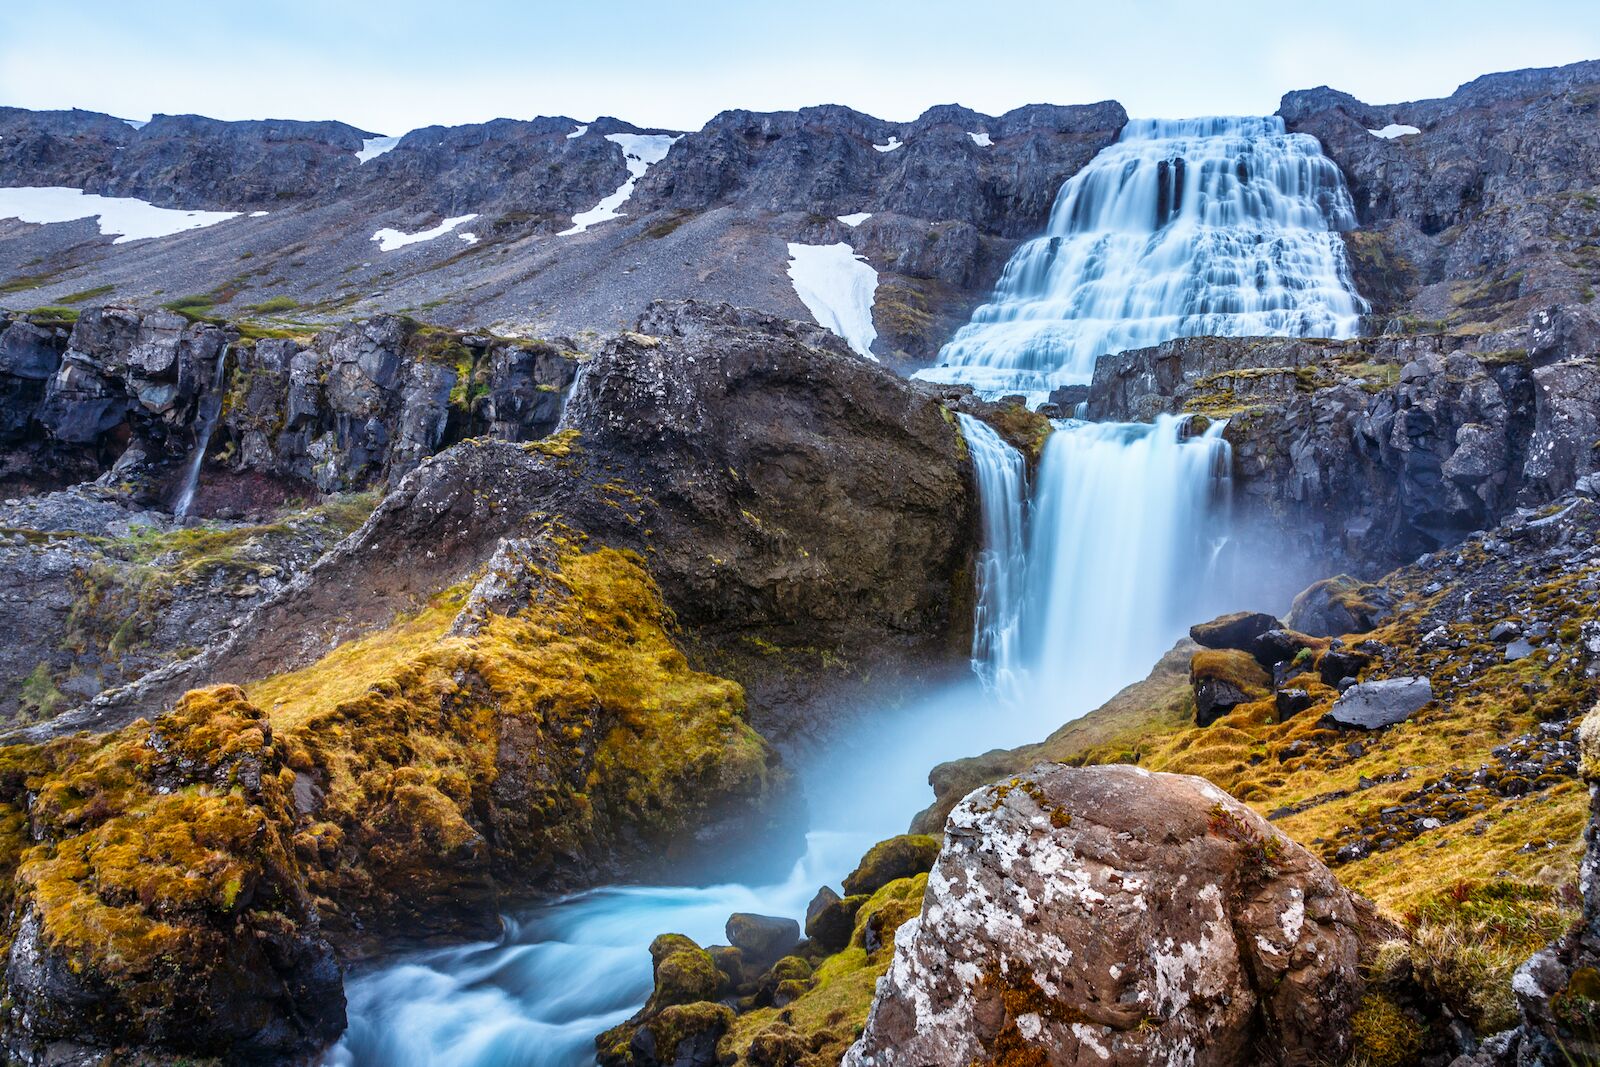 Dynjandi Waterfall near the village of Thingeyri, Iceland